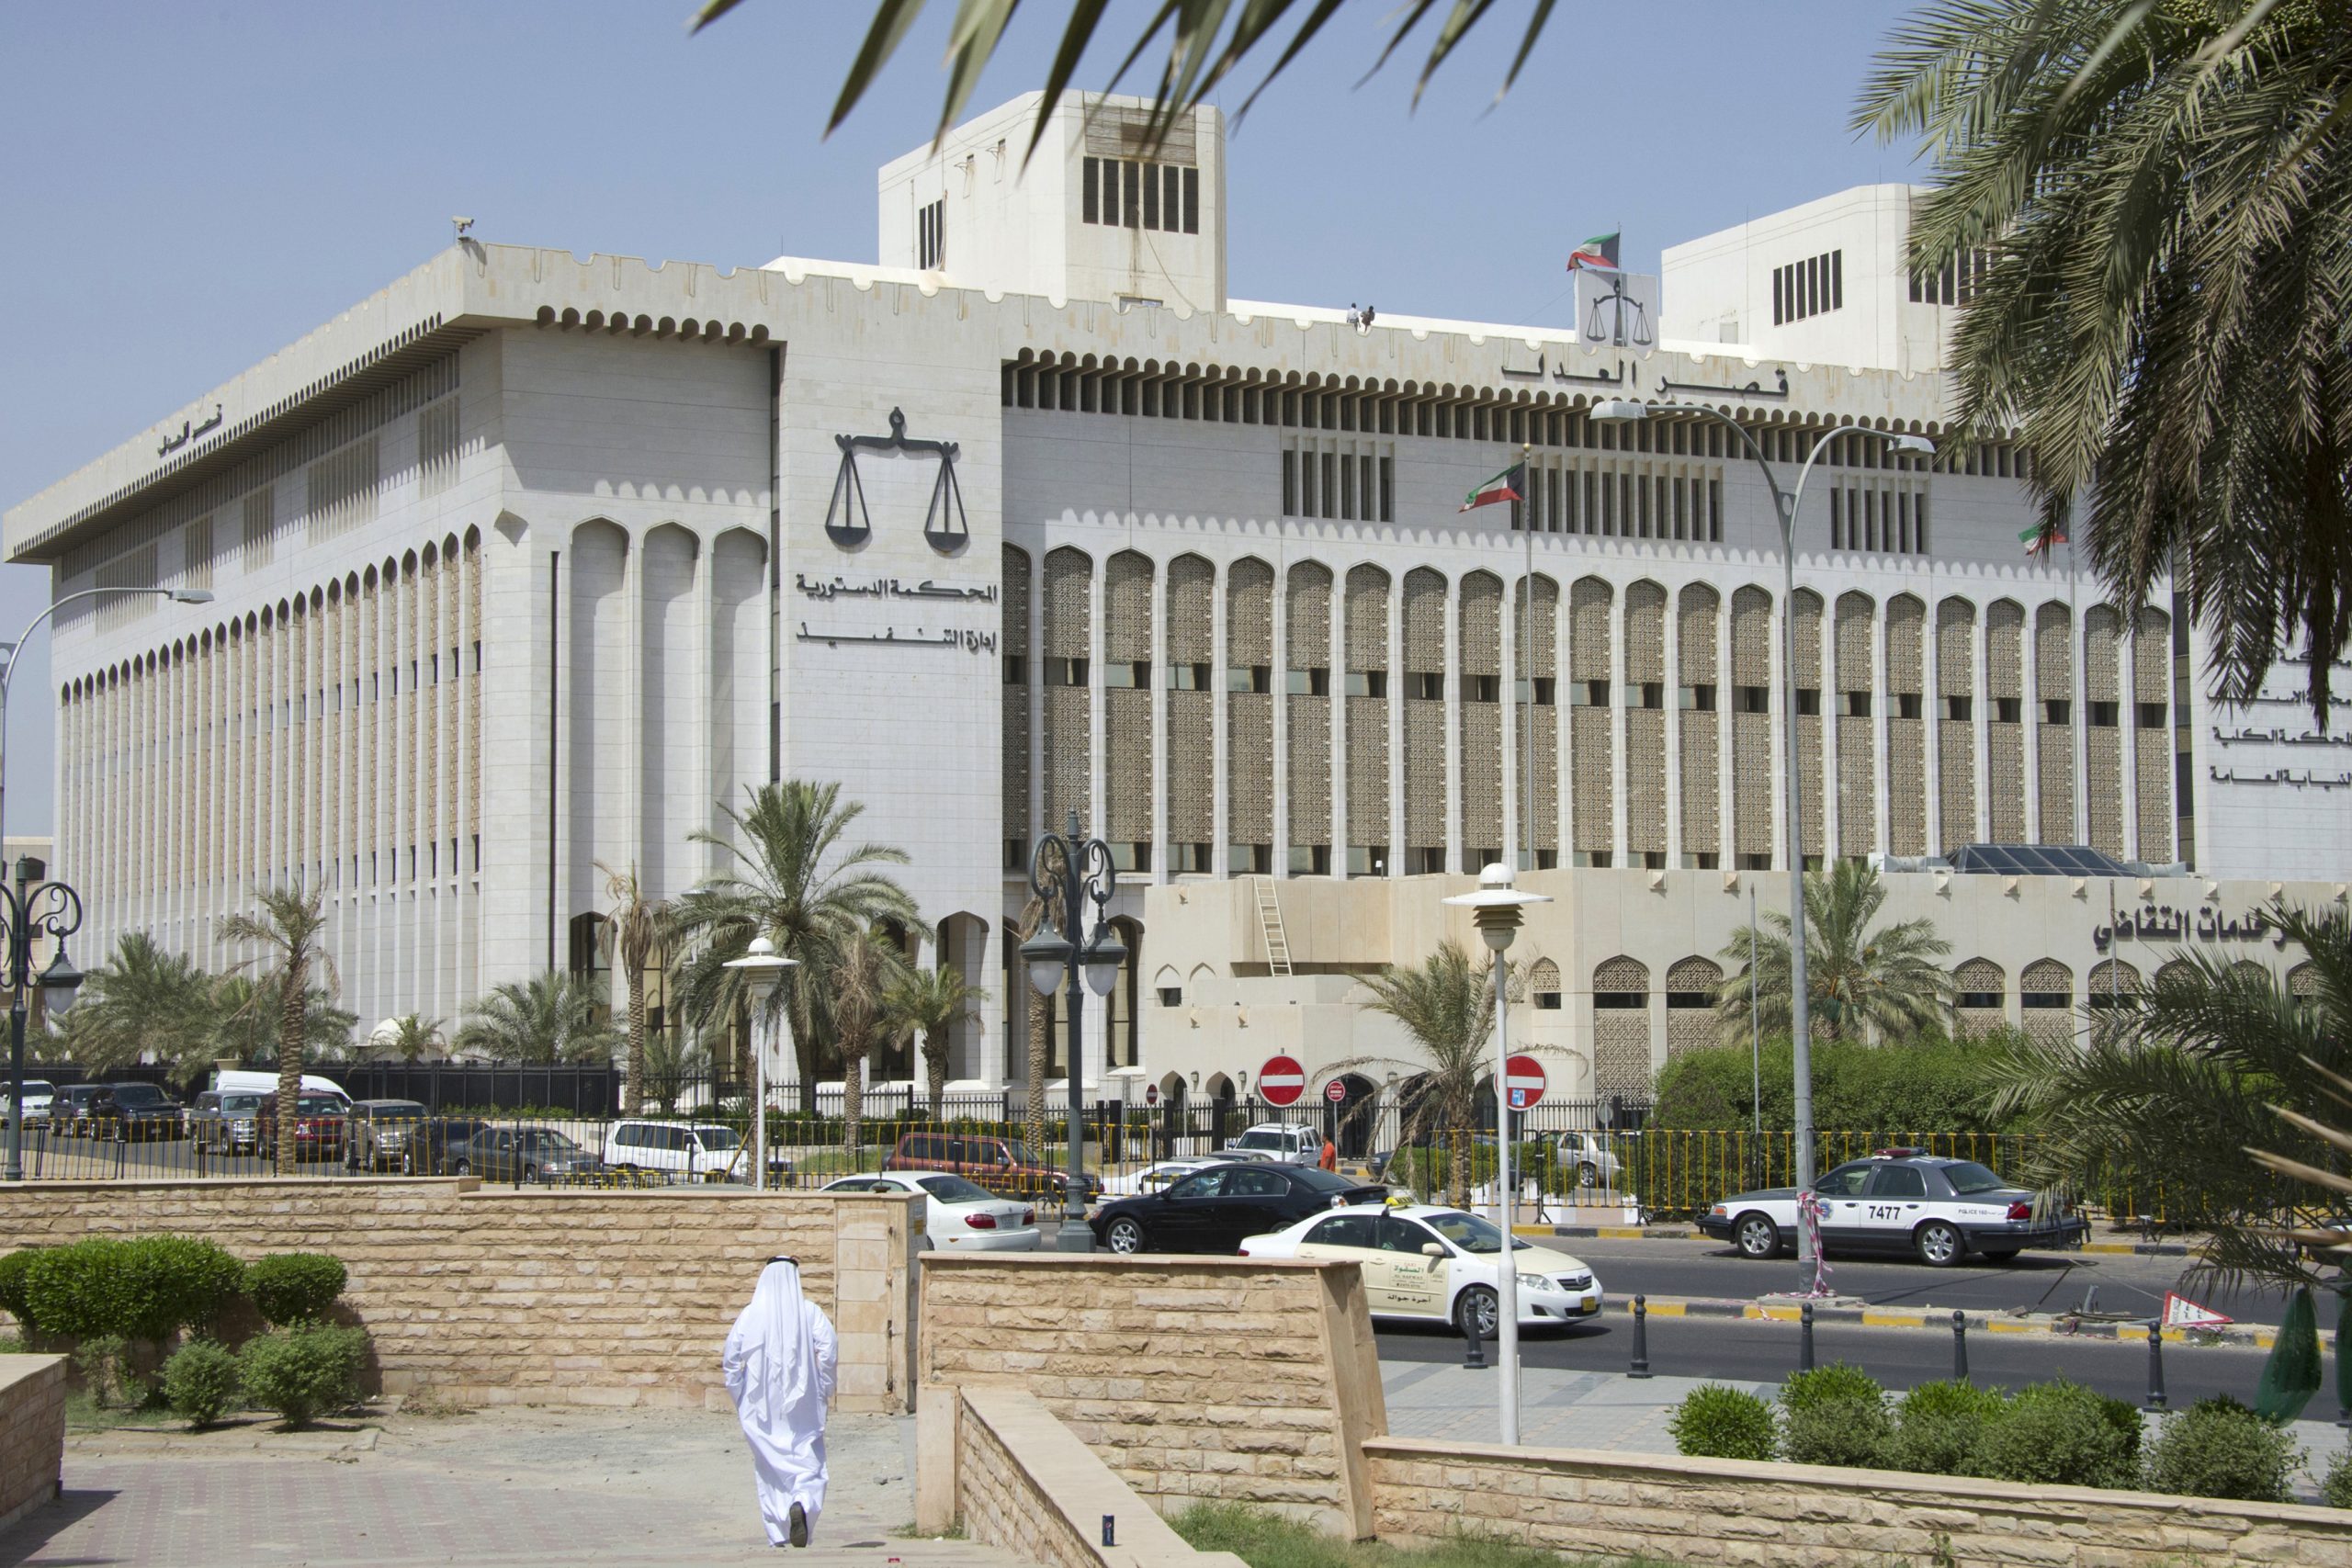 النيابة العامة الكويتية تحتجز مواطنا بتهمة القيام بعمل عدائي ضد السعودية